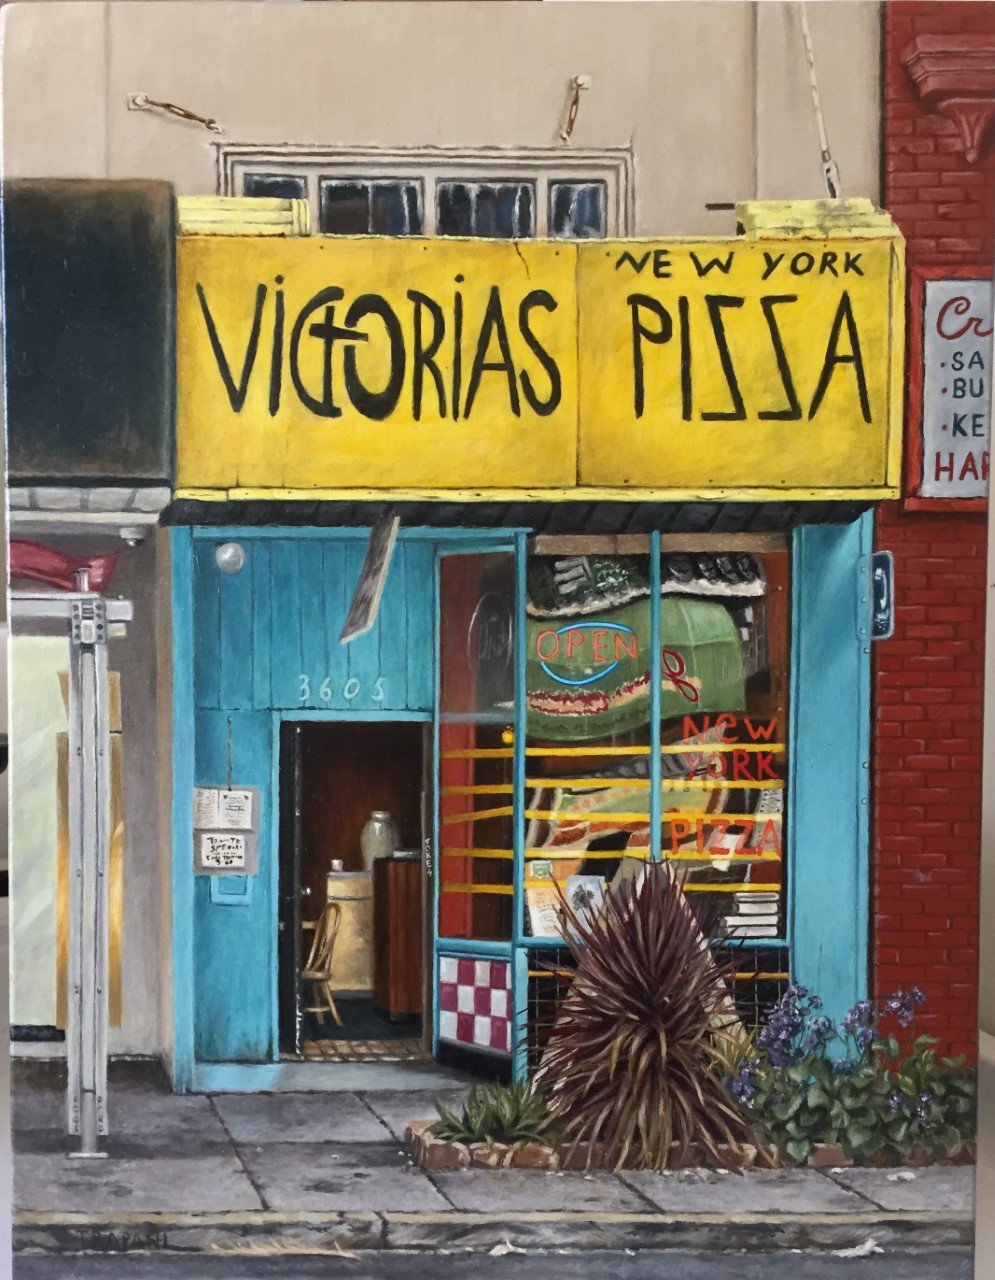 Victoria's Pizza by Maria Trapani